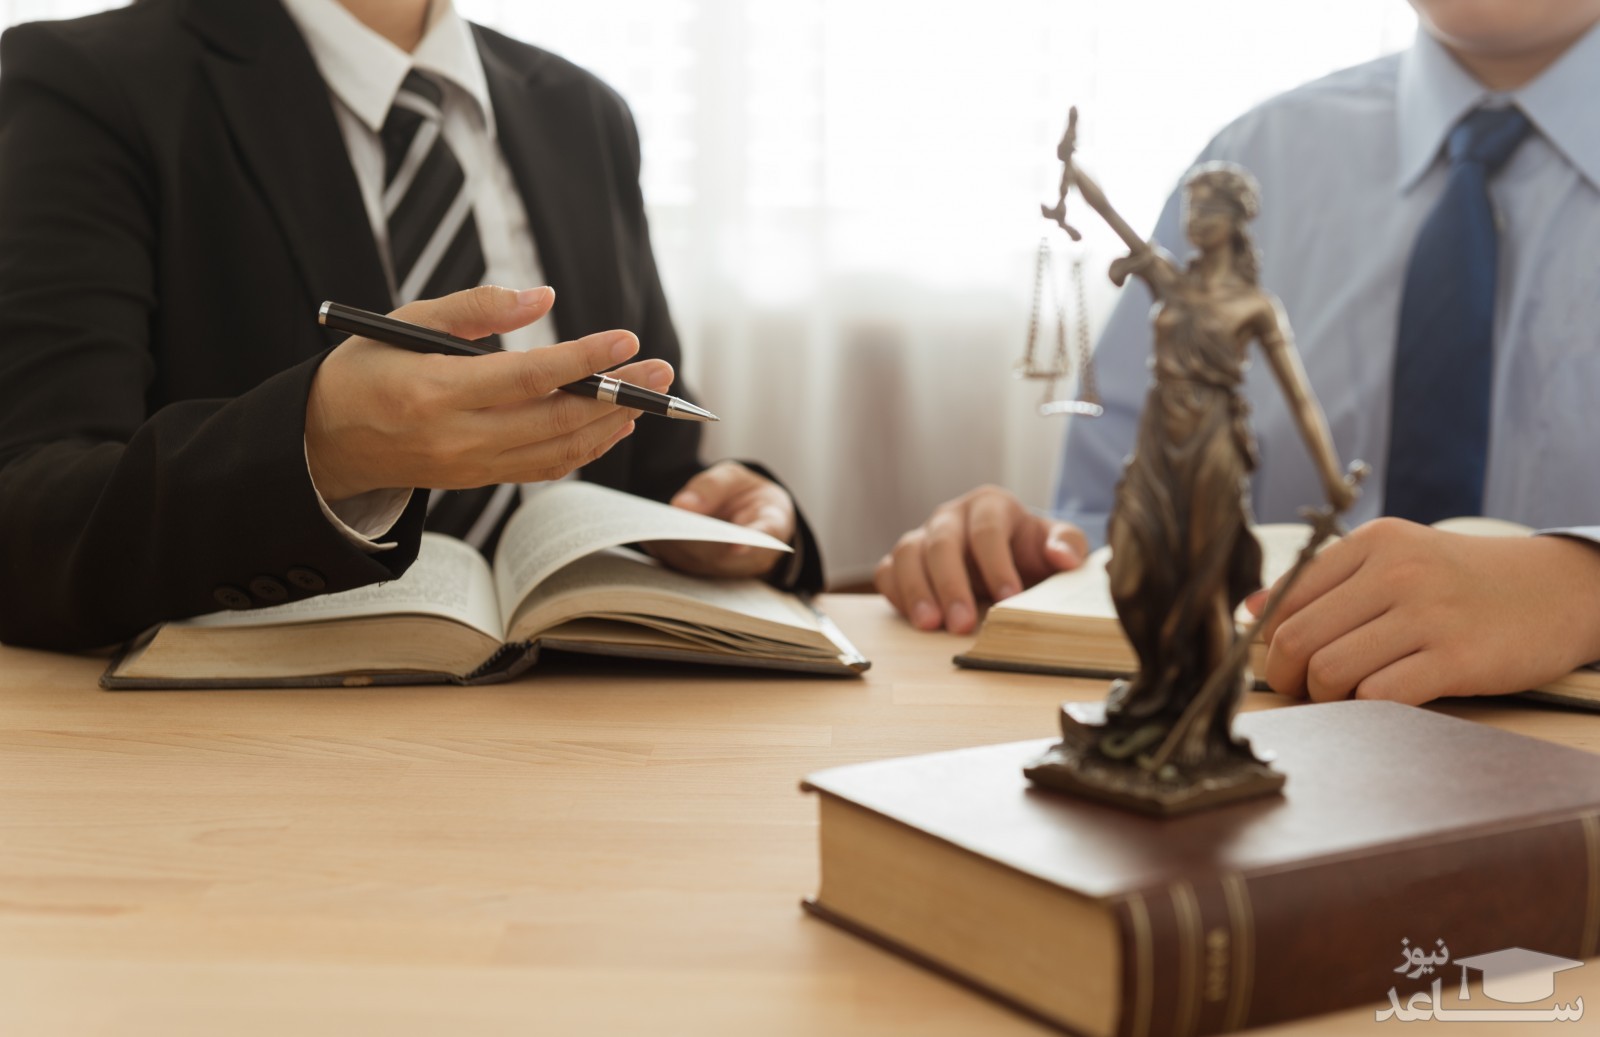 مشاور حقوقی کیست و چه وظایفی دارد؟